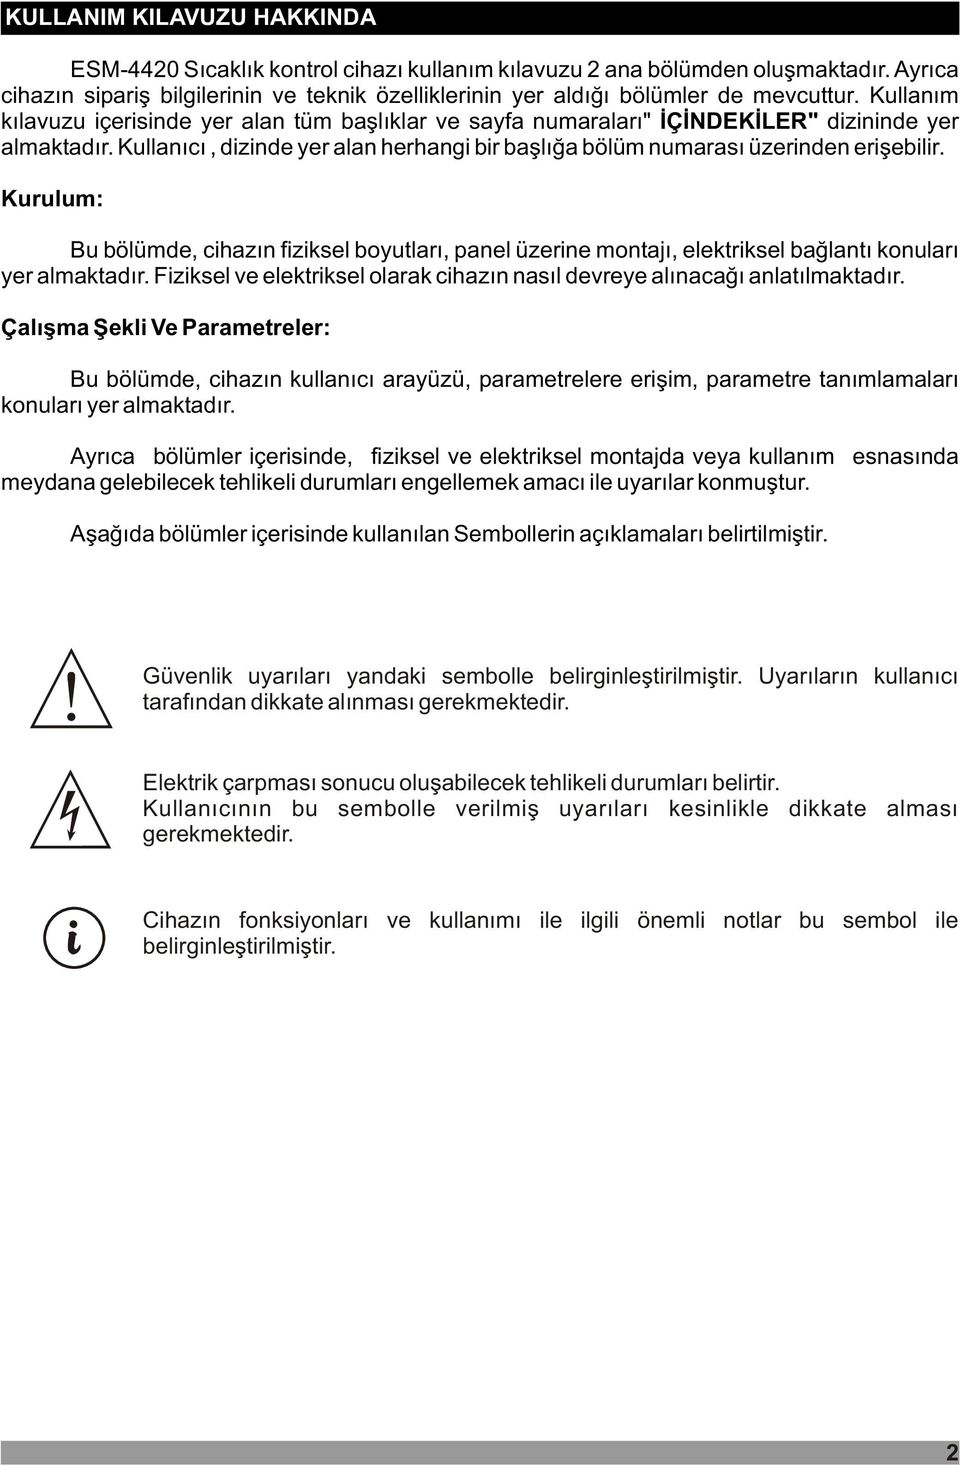 Kullaným kýlavuzu içerisinde yer alan tüm baþlýklar ve sayfa numaralarý" ÝÇÝNDEKÝLER" dizininde yer almaktadýr. Kullanýcý, dizinde yer alan herhangi bir baþlýða bölüm numarasý üzerinden eriþebilir.